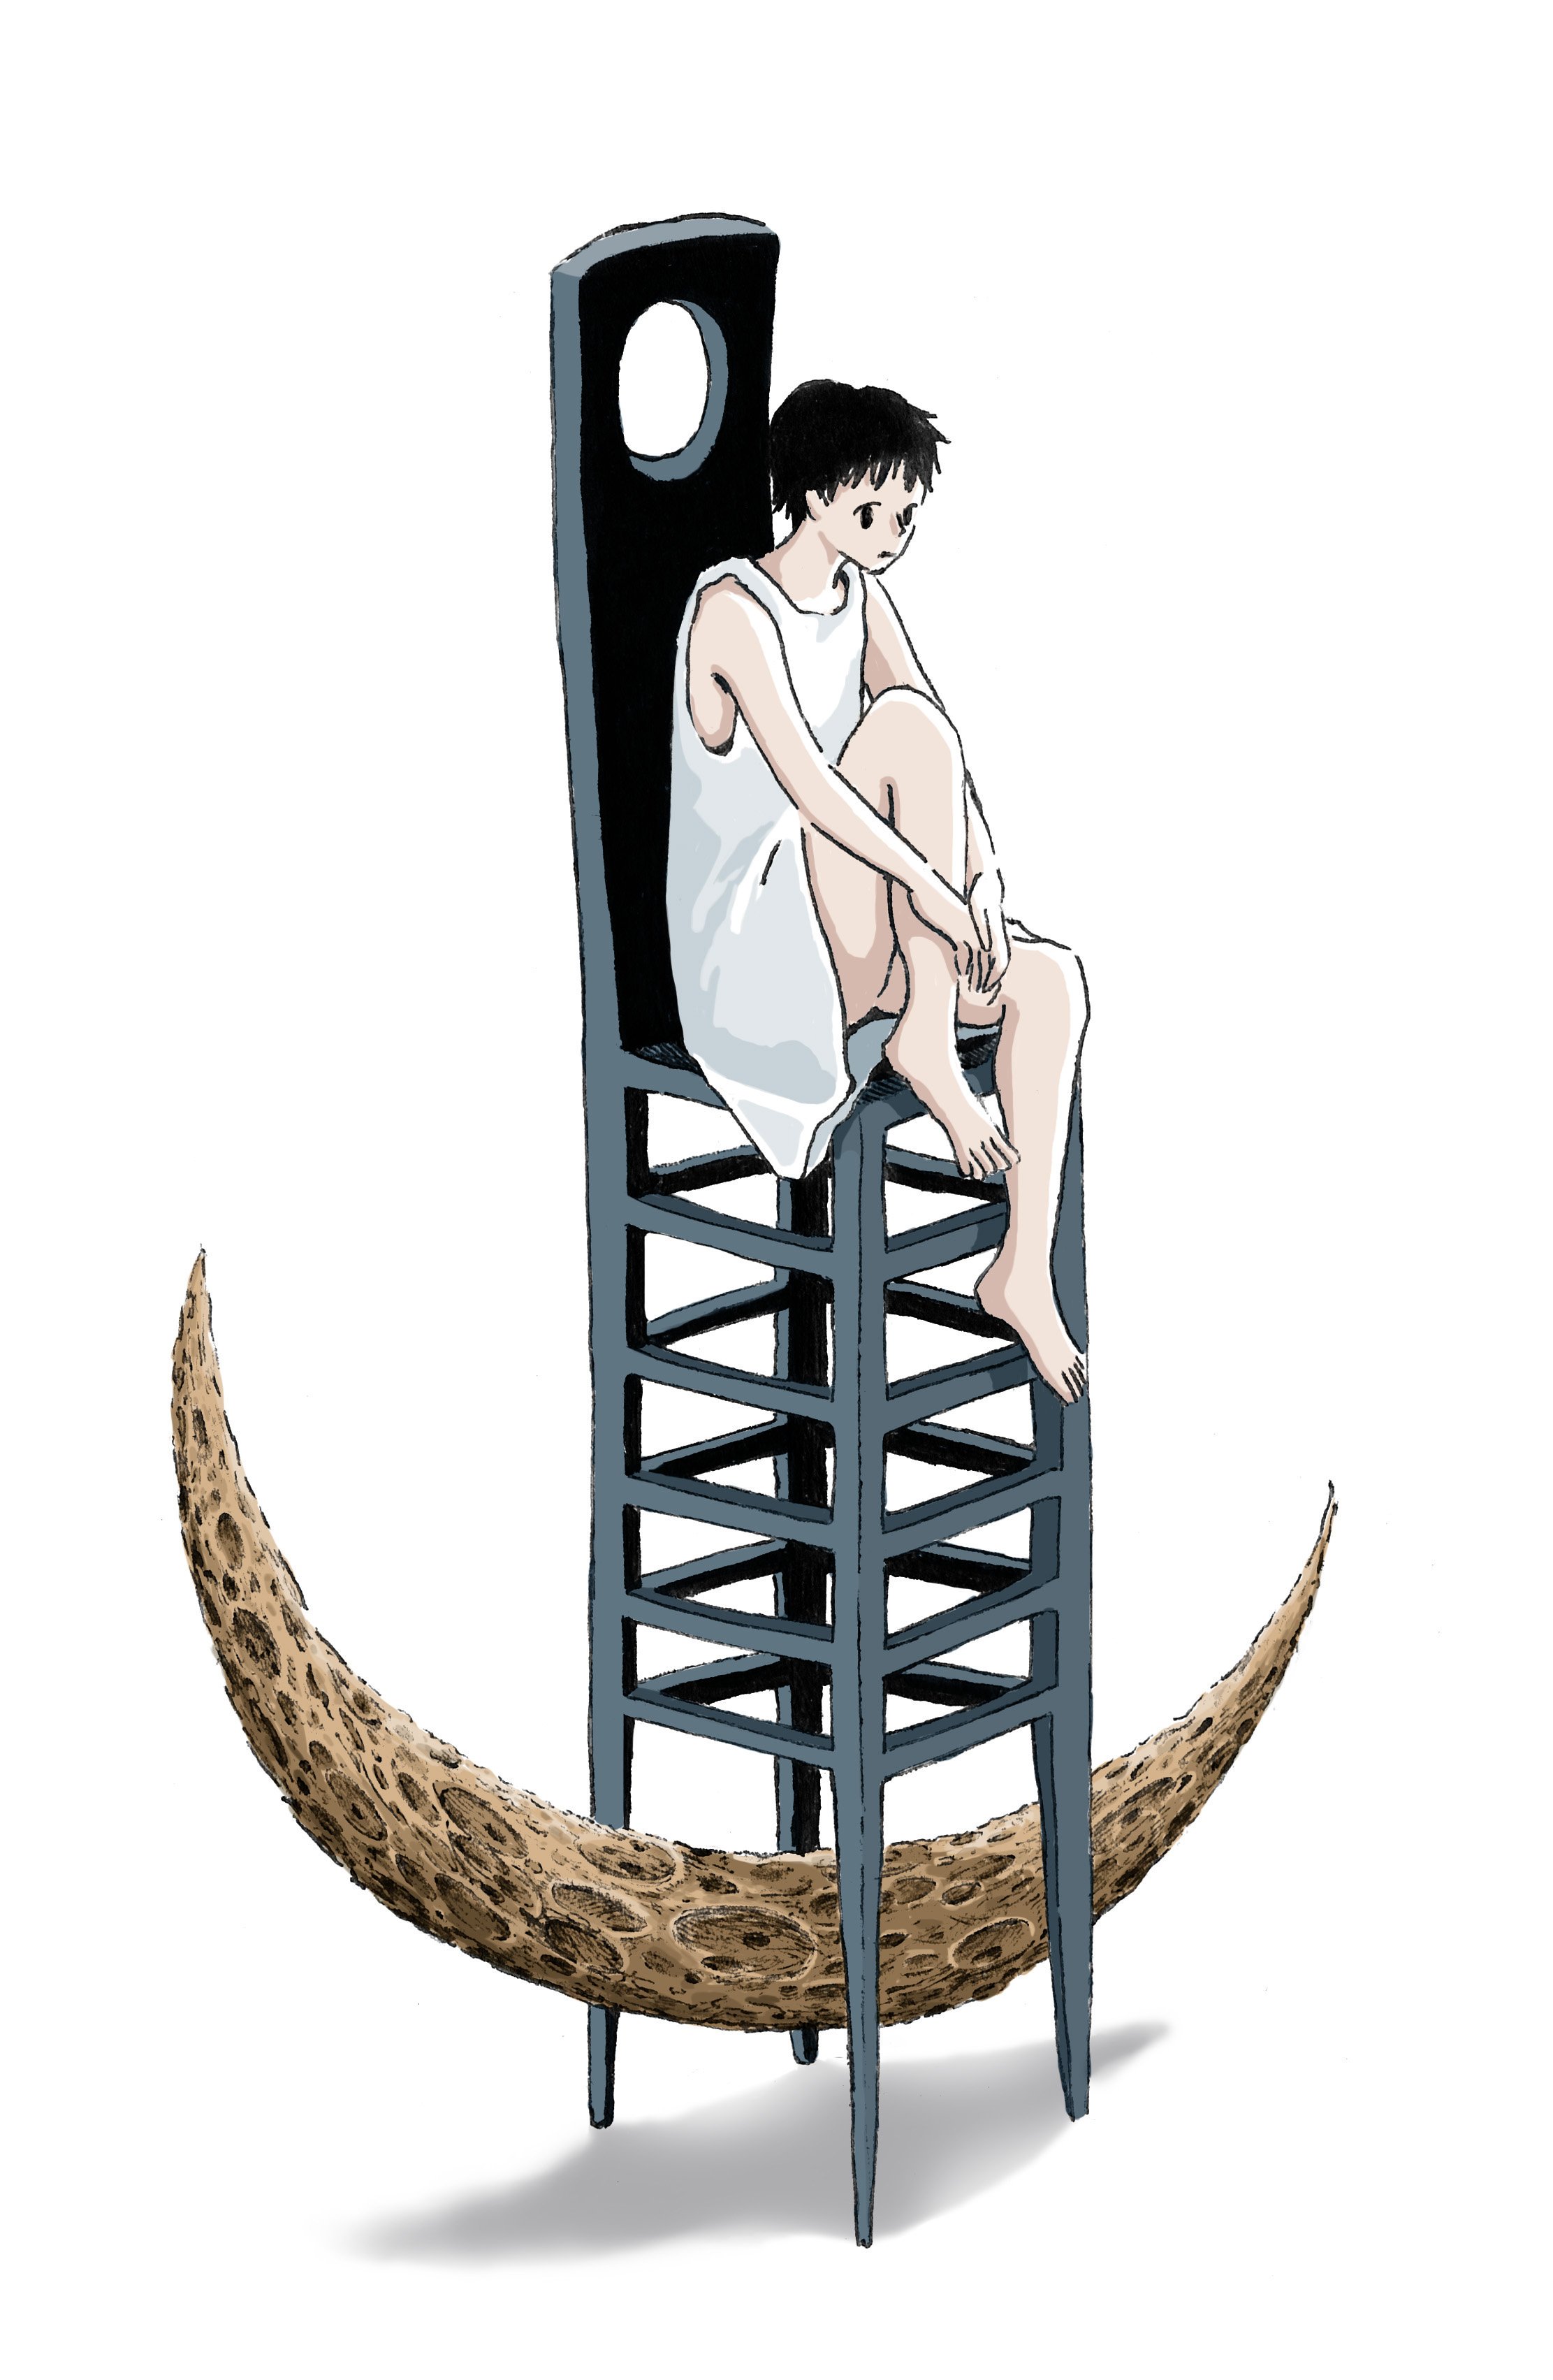 日本maruimichi超现实主义风格创意插图